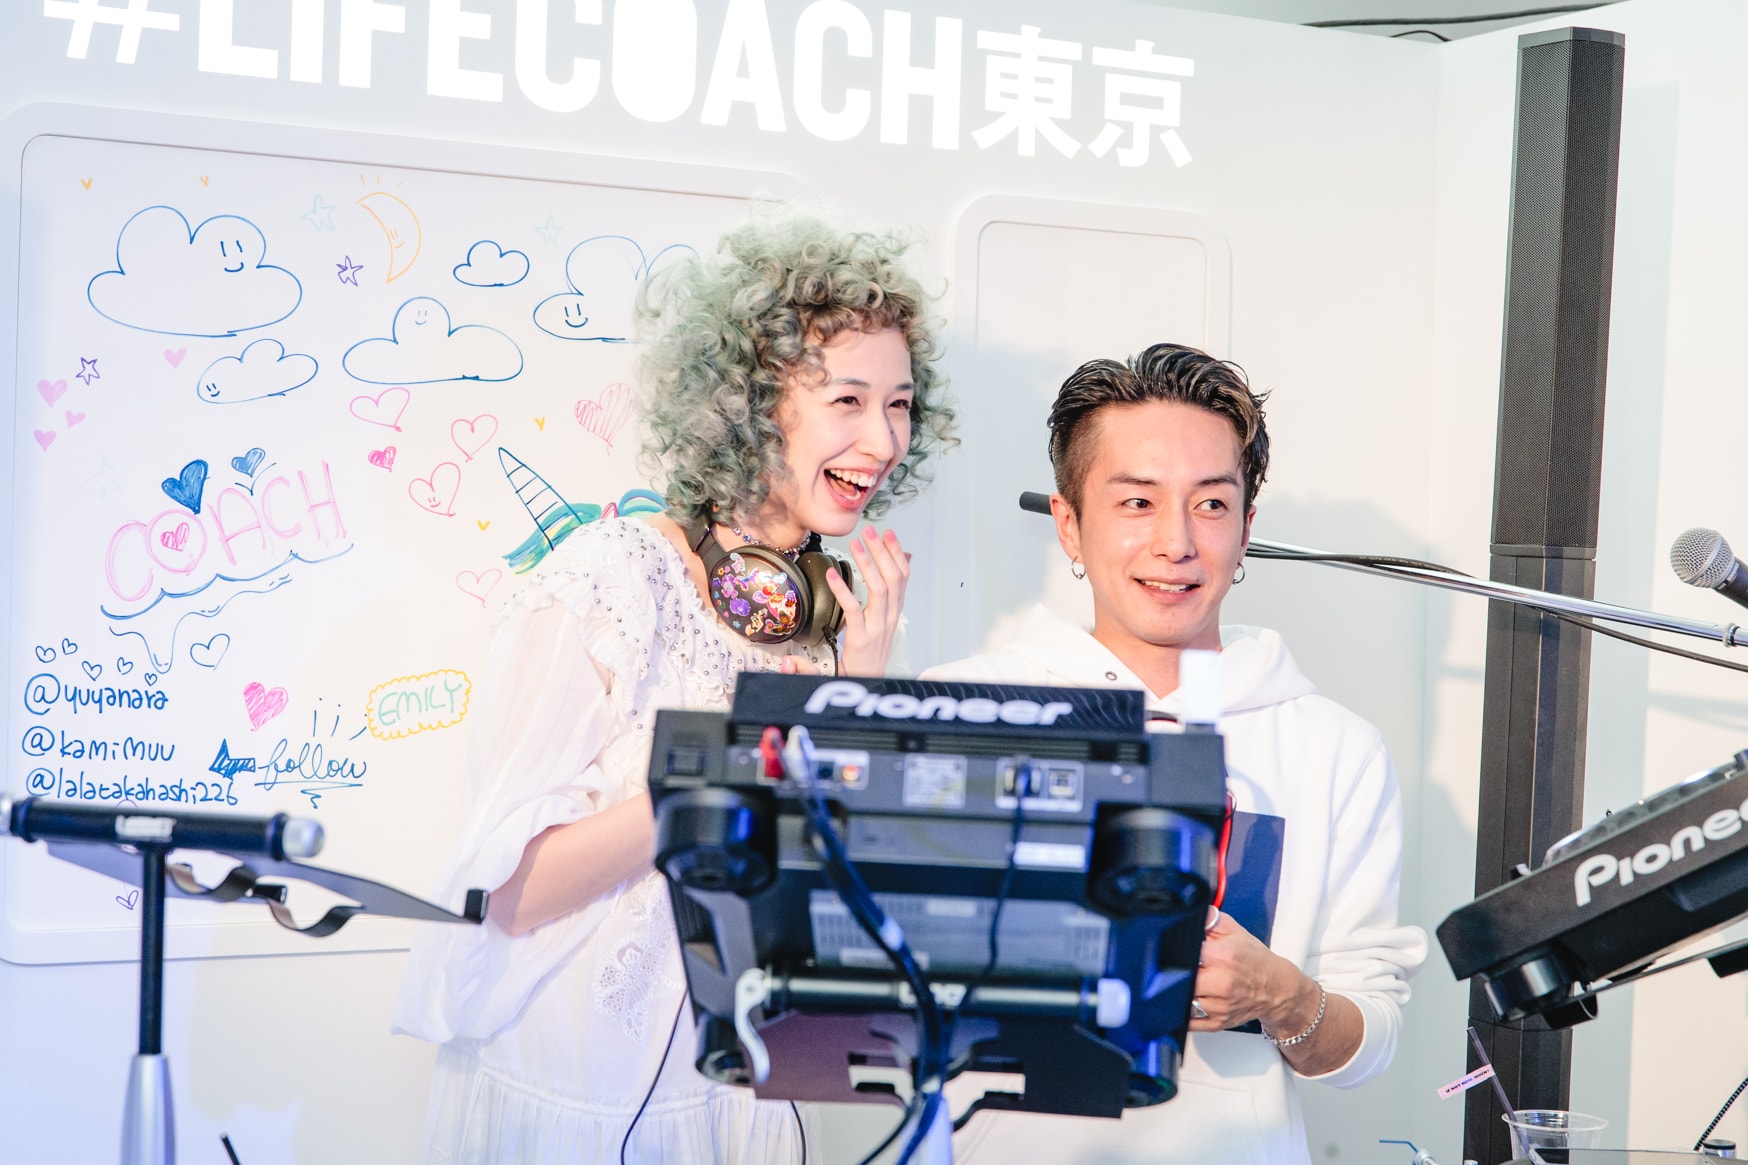 東京・表参道に突如出現した Coach のファン参加型イベント “LIFE COACH” へ潜入 地下鉄や祭りを彷彿とさせる異空間では、気鋭アーティストのライブやタロット占いを定期的に開催 